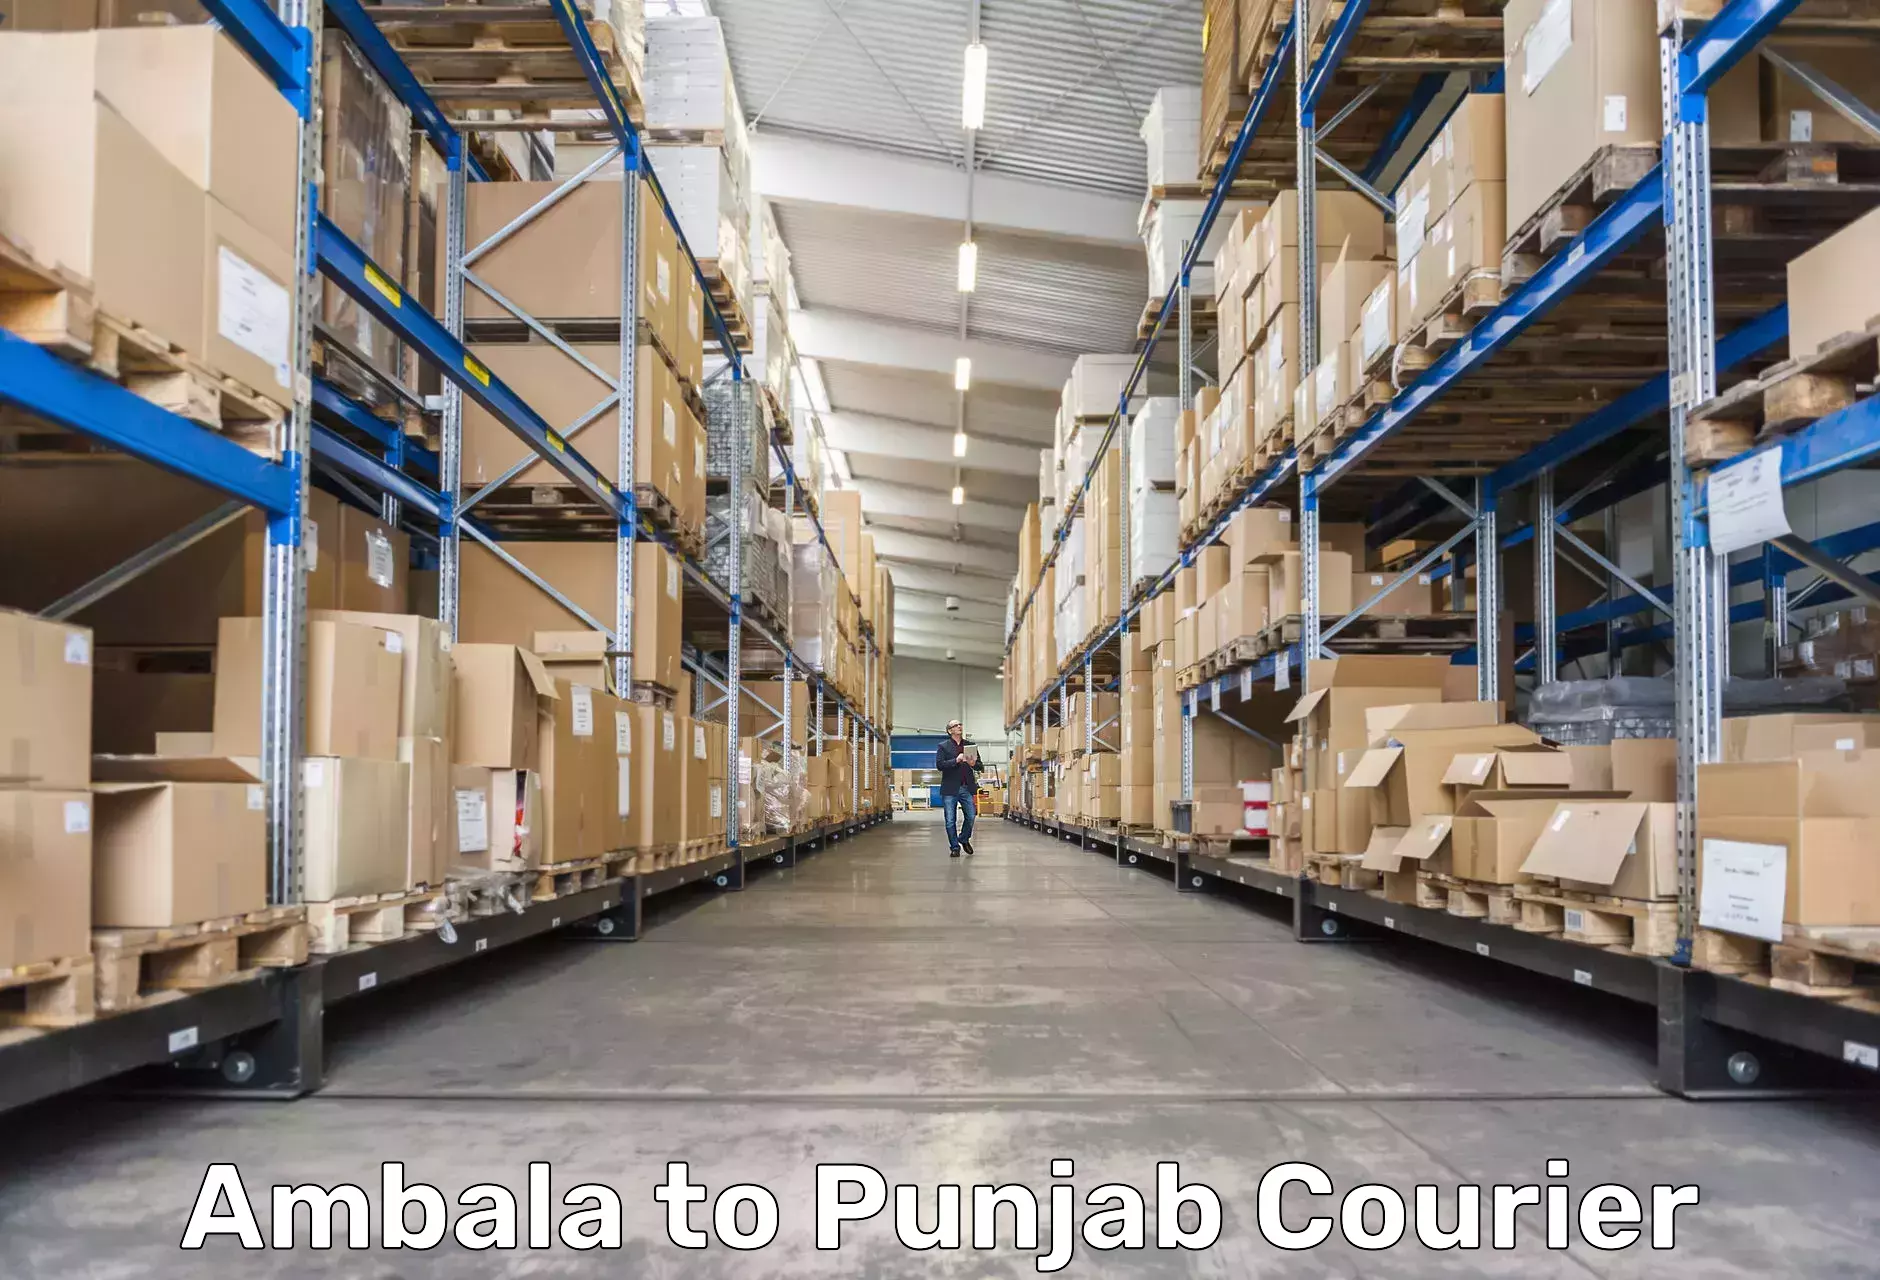 Smart shipping technology Ambala to Punjab